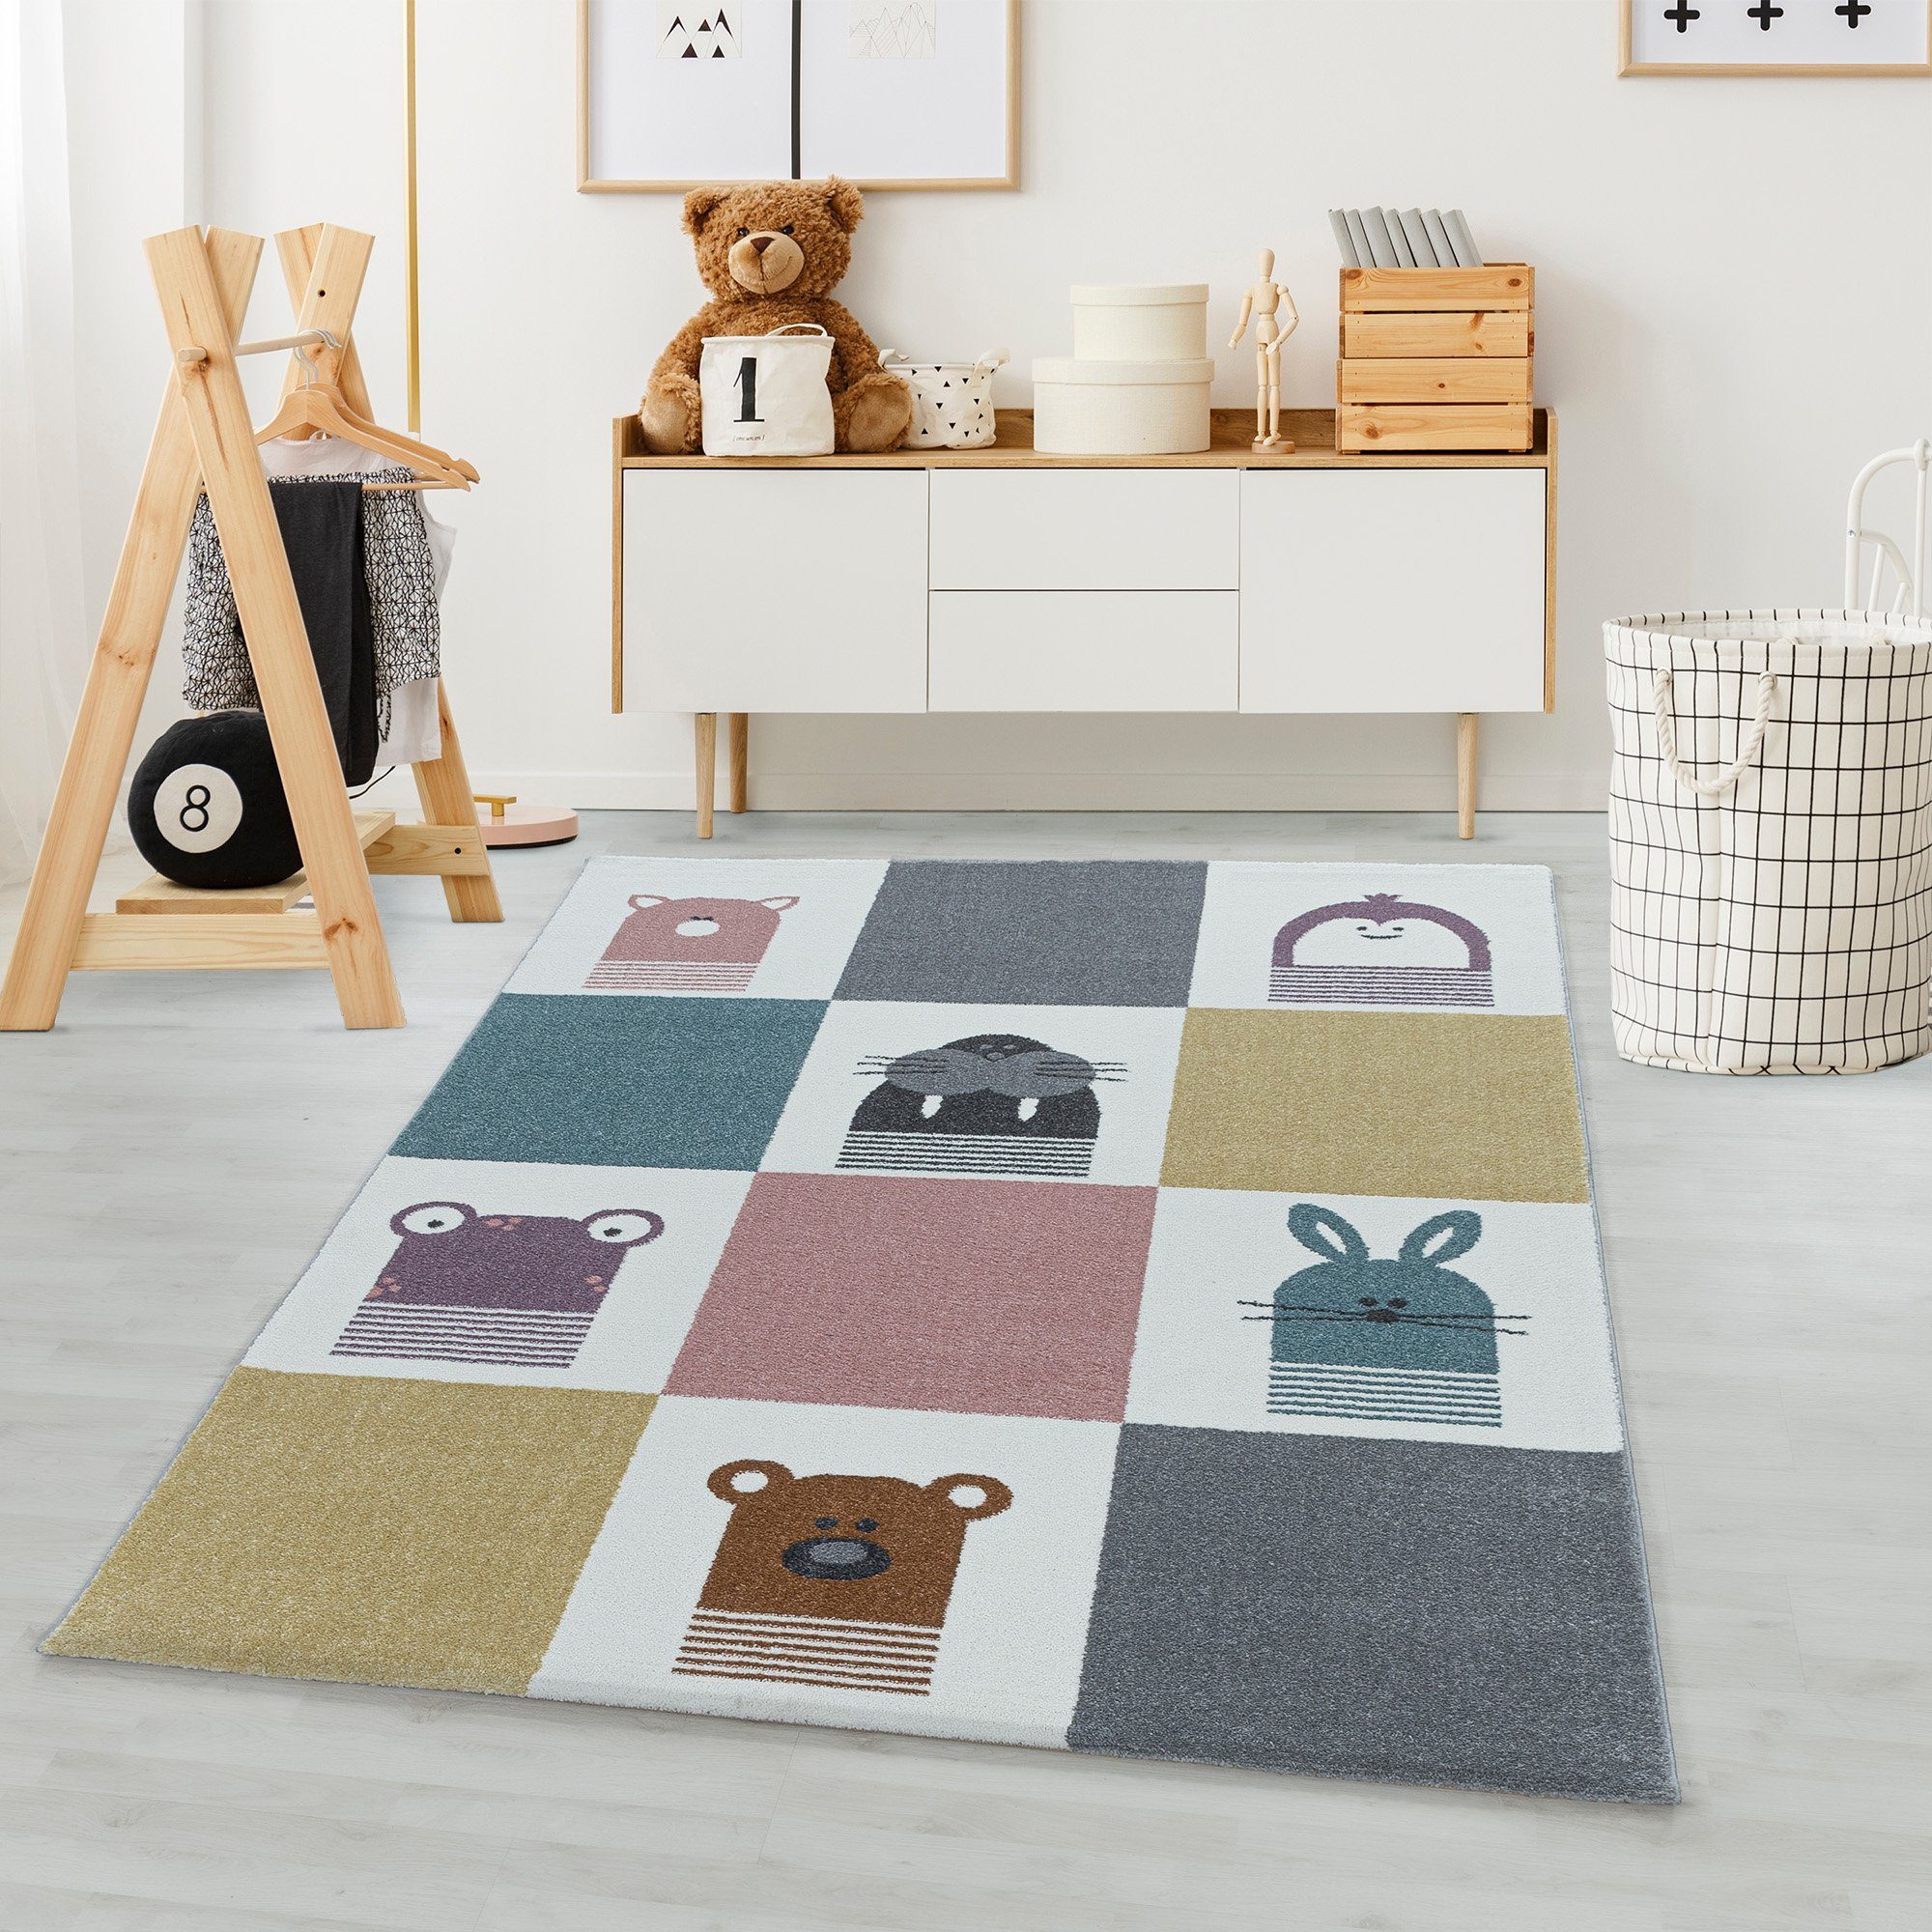 Höhe: Tierdesign, Kinderteppich Rund, Kinderzimmer Teppich Carpetsale24, 11 Kinder Teppich mm, Bunt Kinderteppich TierDesign für